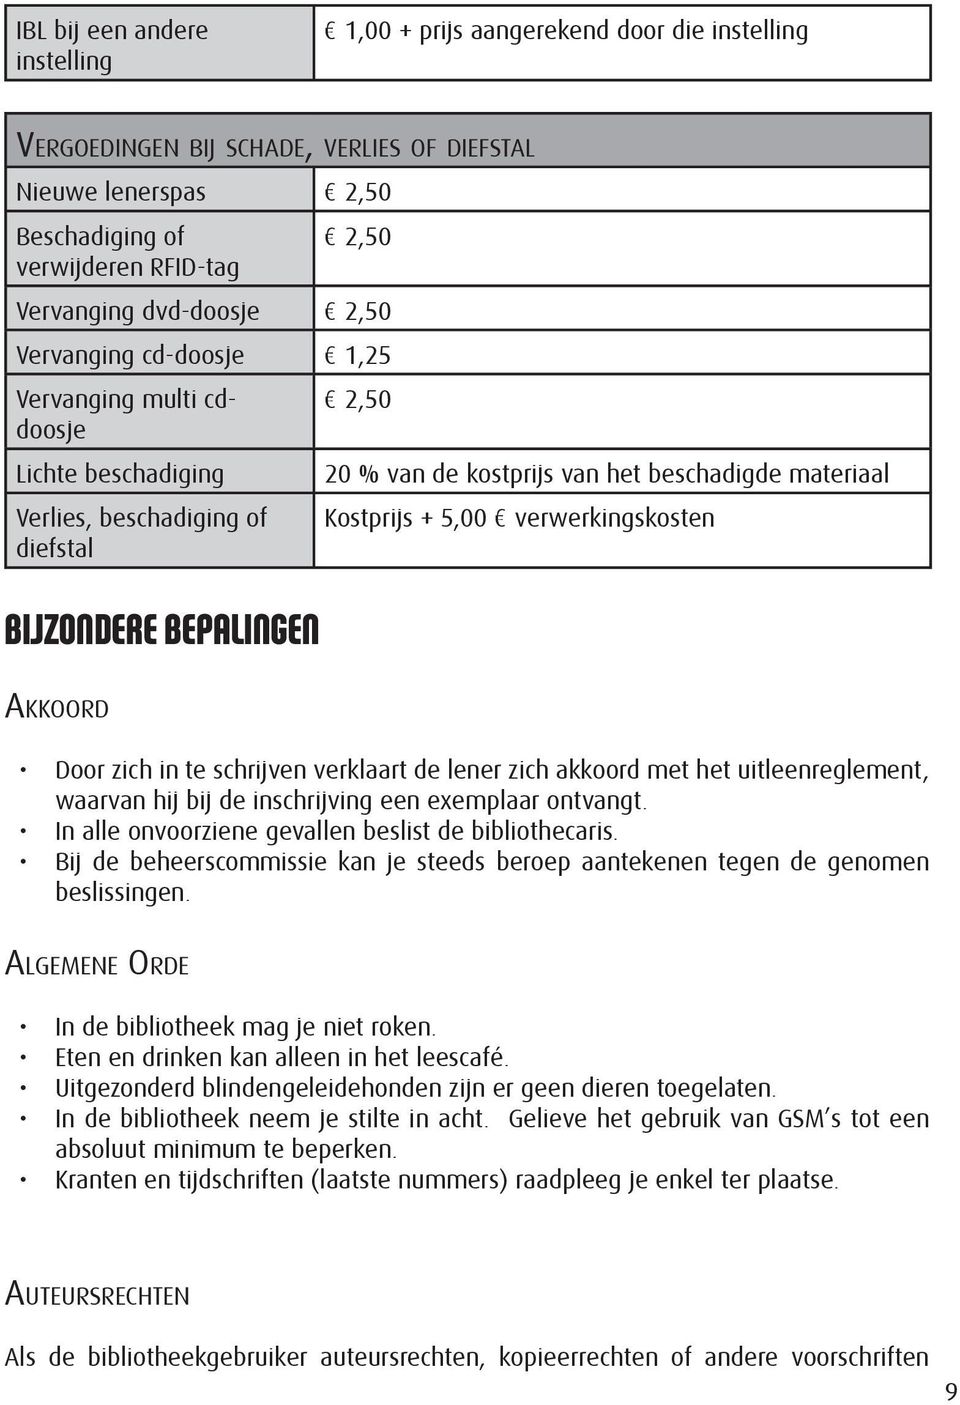 materiaal Kostprijs + 5,00 verwerkingskosten Door zich in te schrijven verklaart de lener zich akkoord met het uitleenreglement, waarvan hij bij de inschrijving een exemplaar ontvangt.